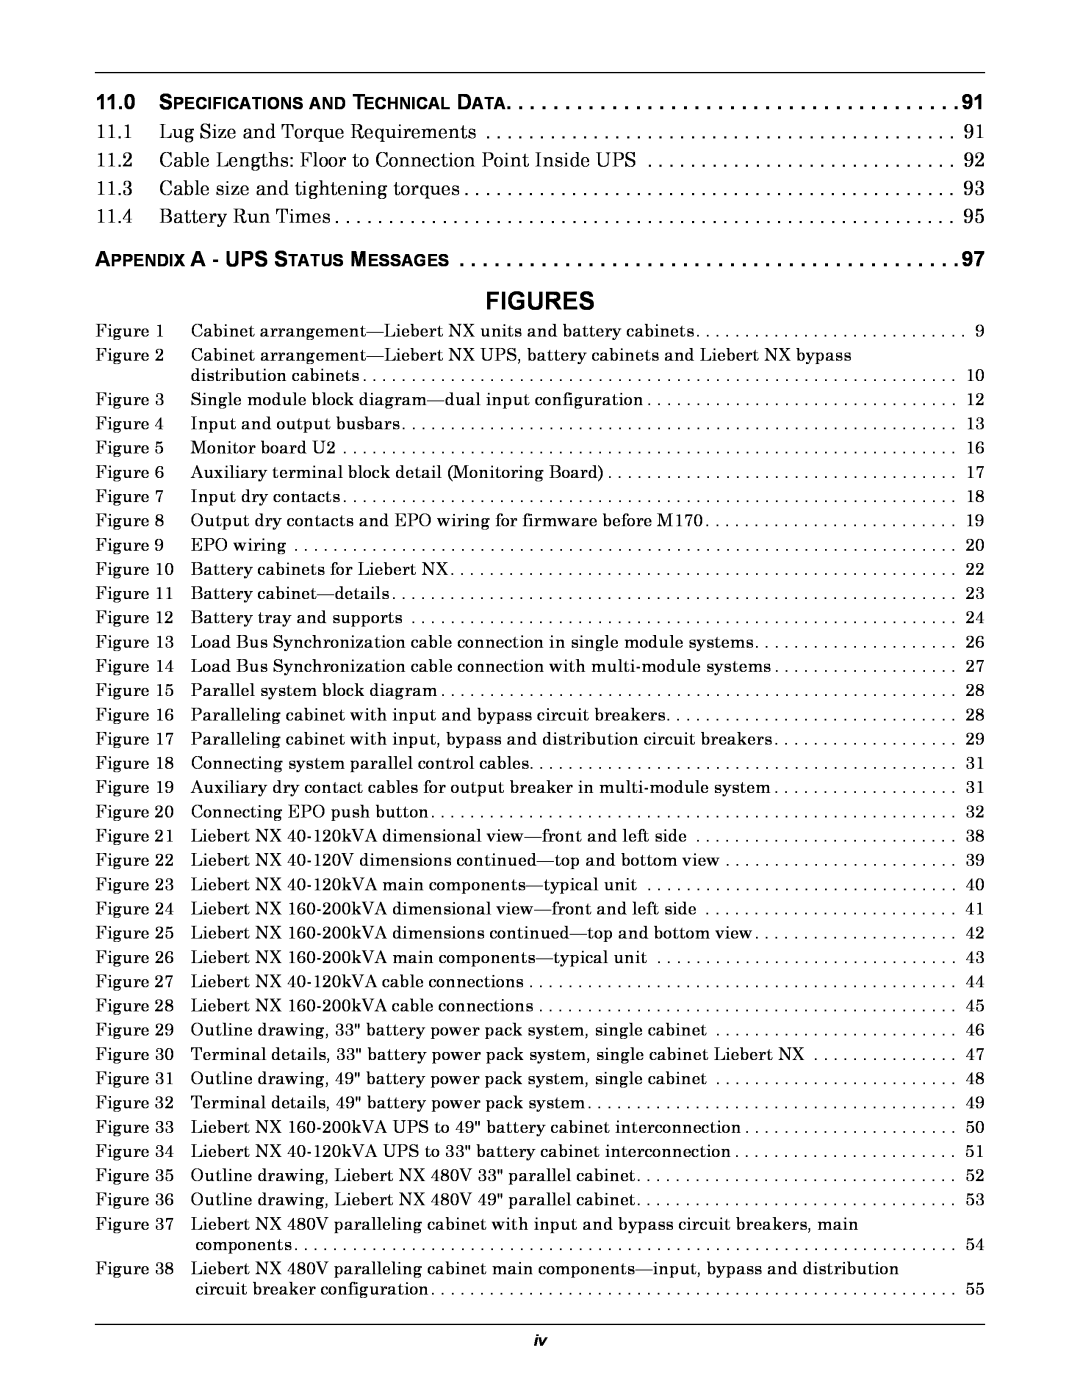 Emerson 60HZ, 480V user manual Figures 